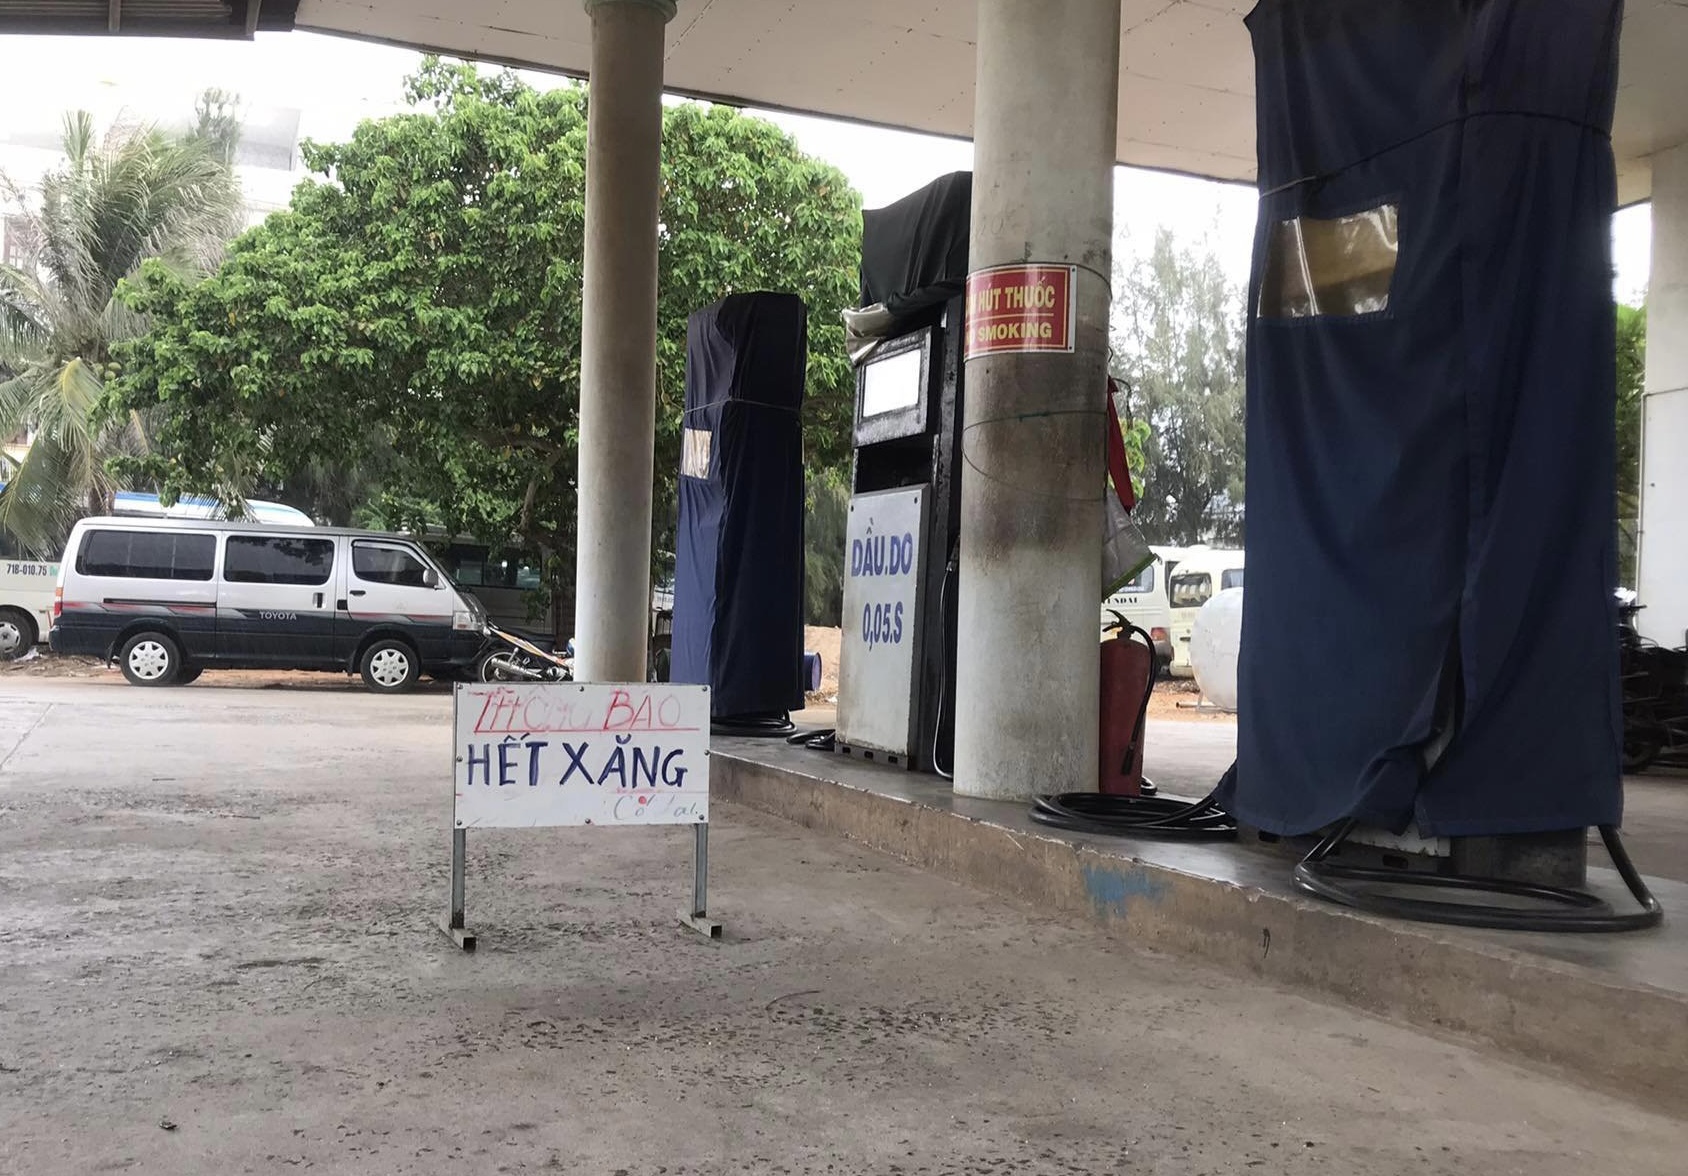 Bảng thông báo “Hết xăng” đặt trước cây xăng ở đảo Phú Quý. Ảnh: DT